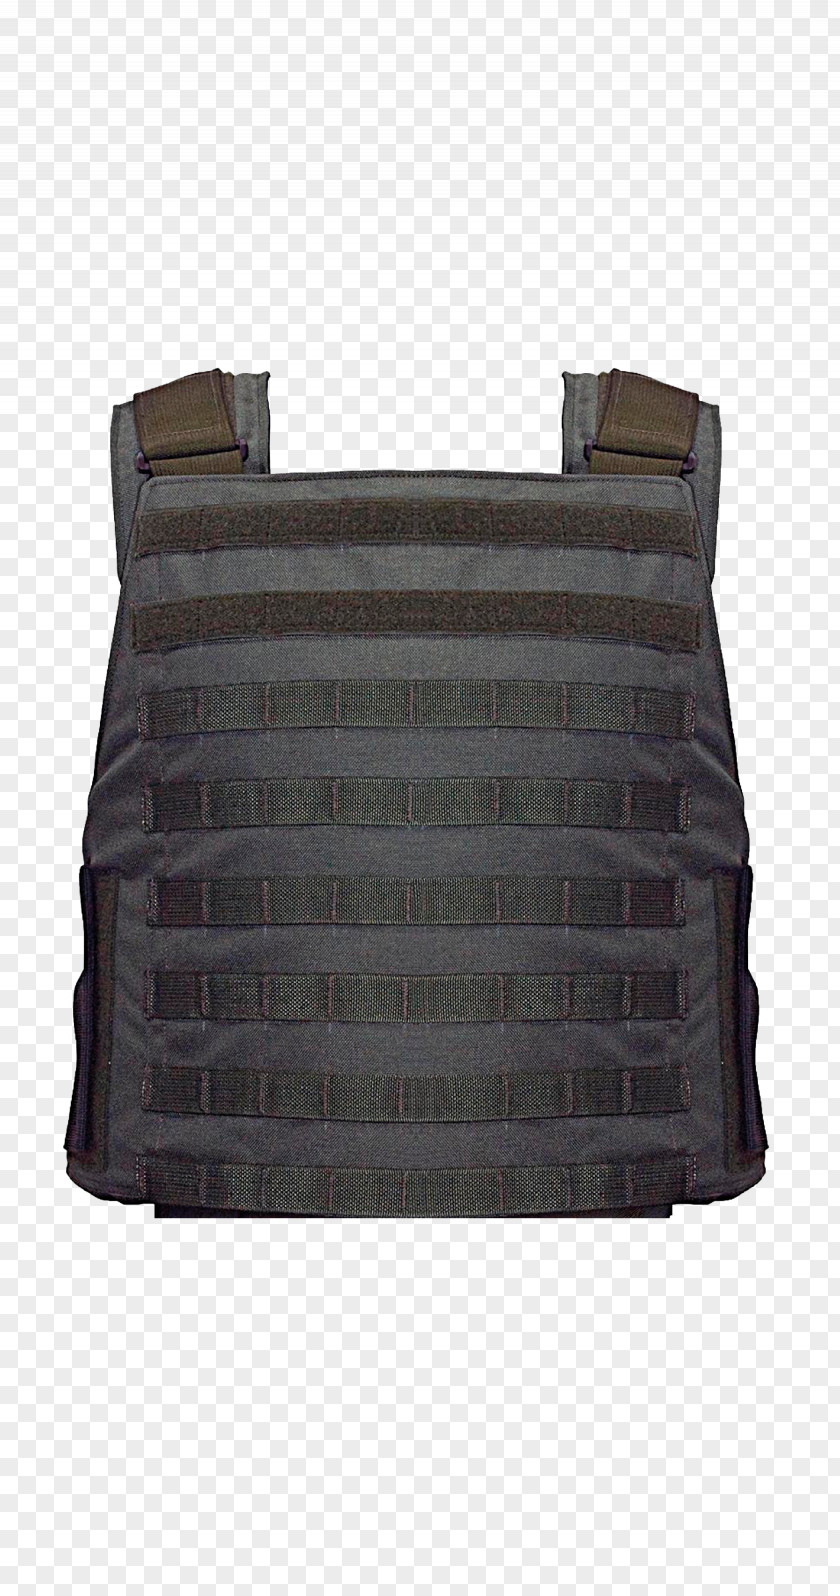 Bag Handbag Messenger Bags Leather Bullet Proof Vests PNG